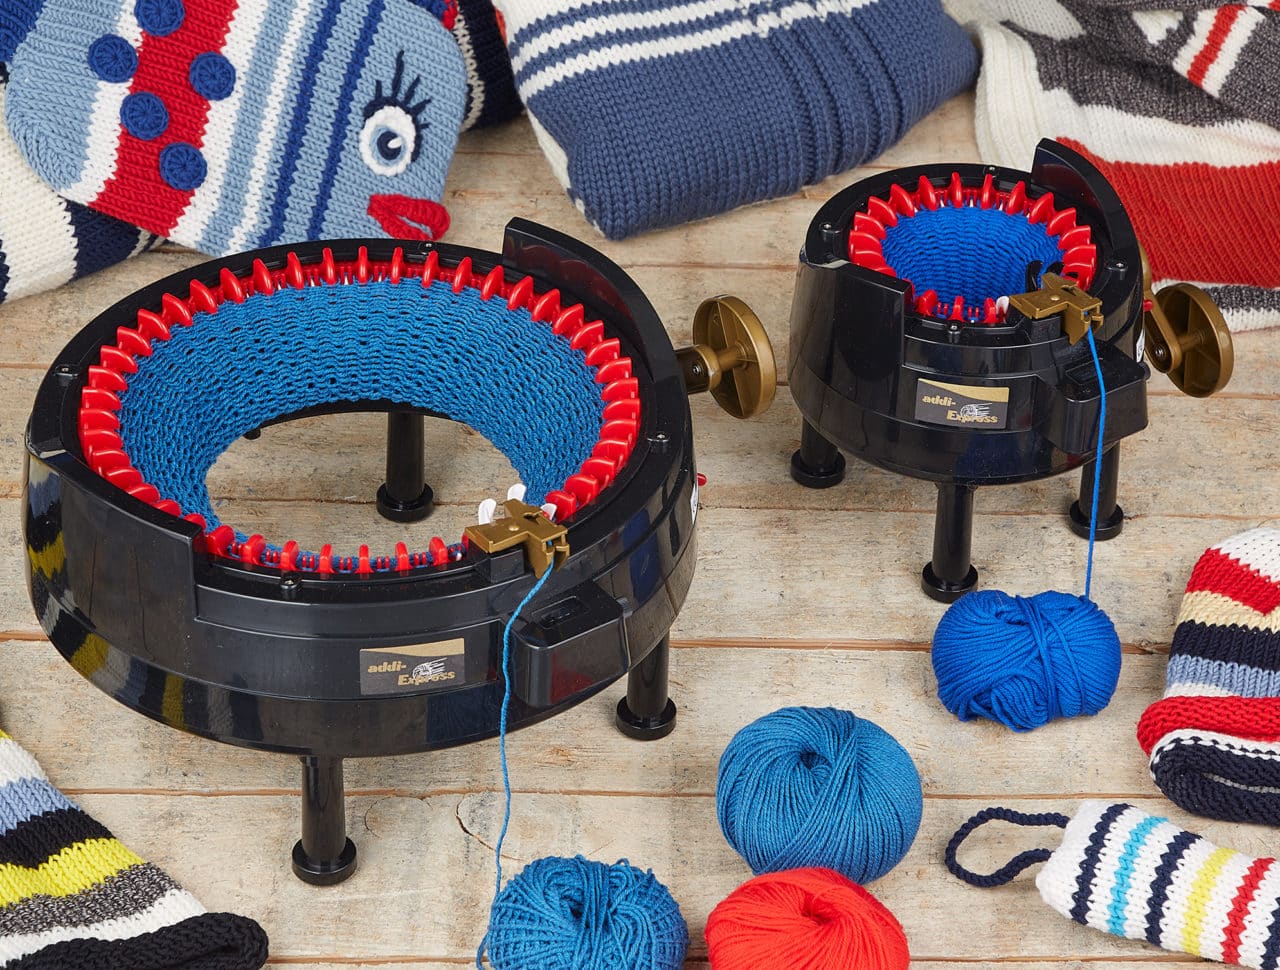 Addi Express Knitting Machine - Original